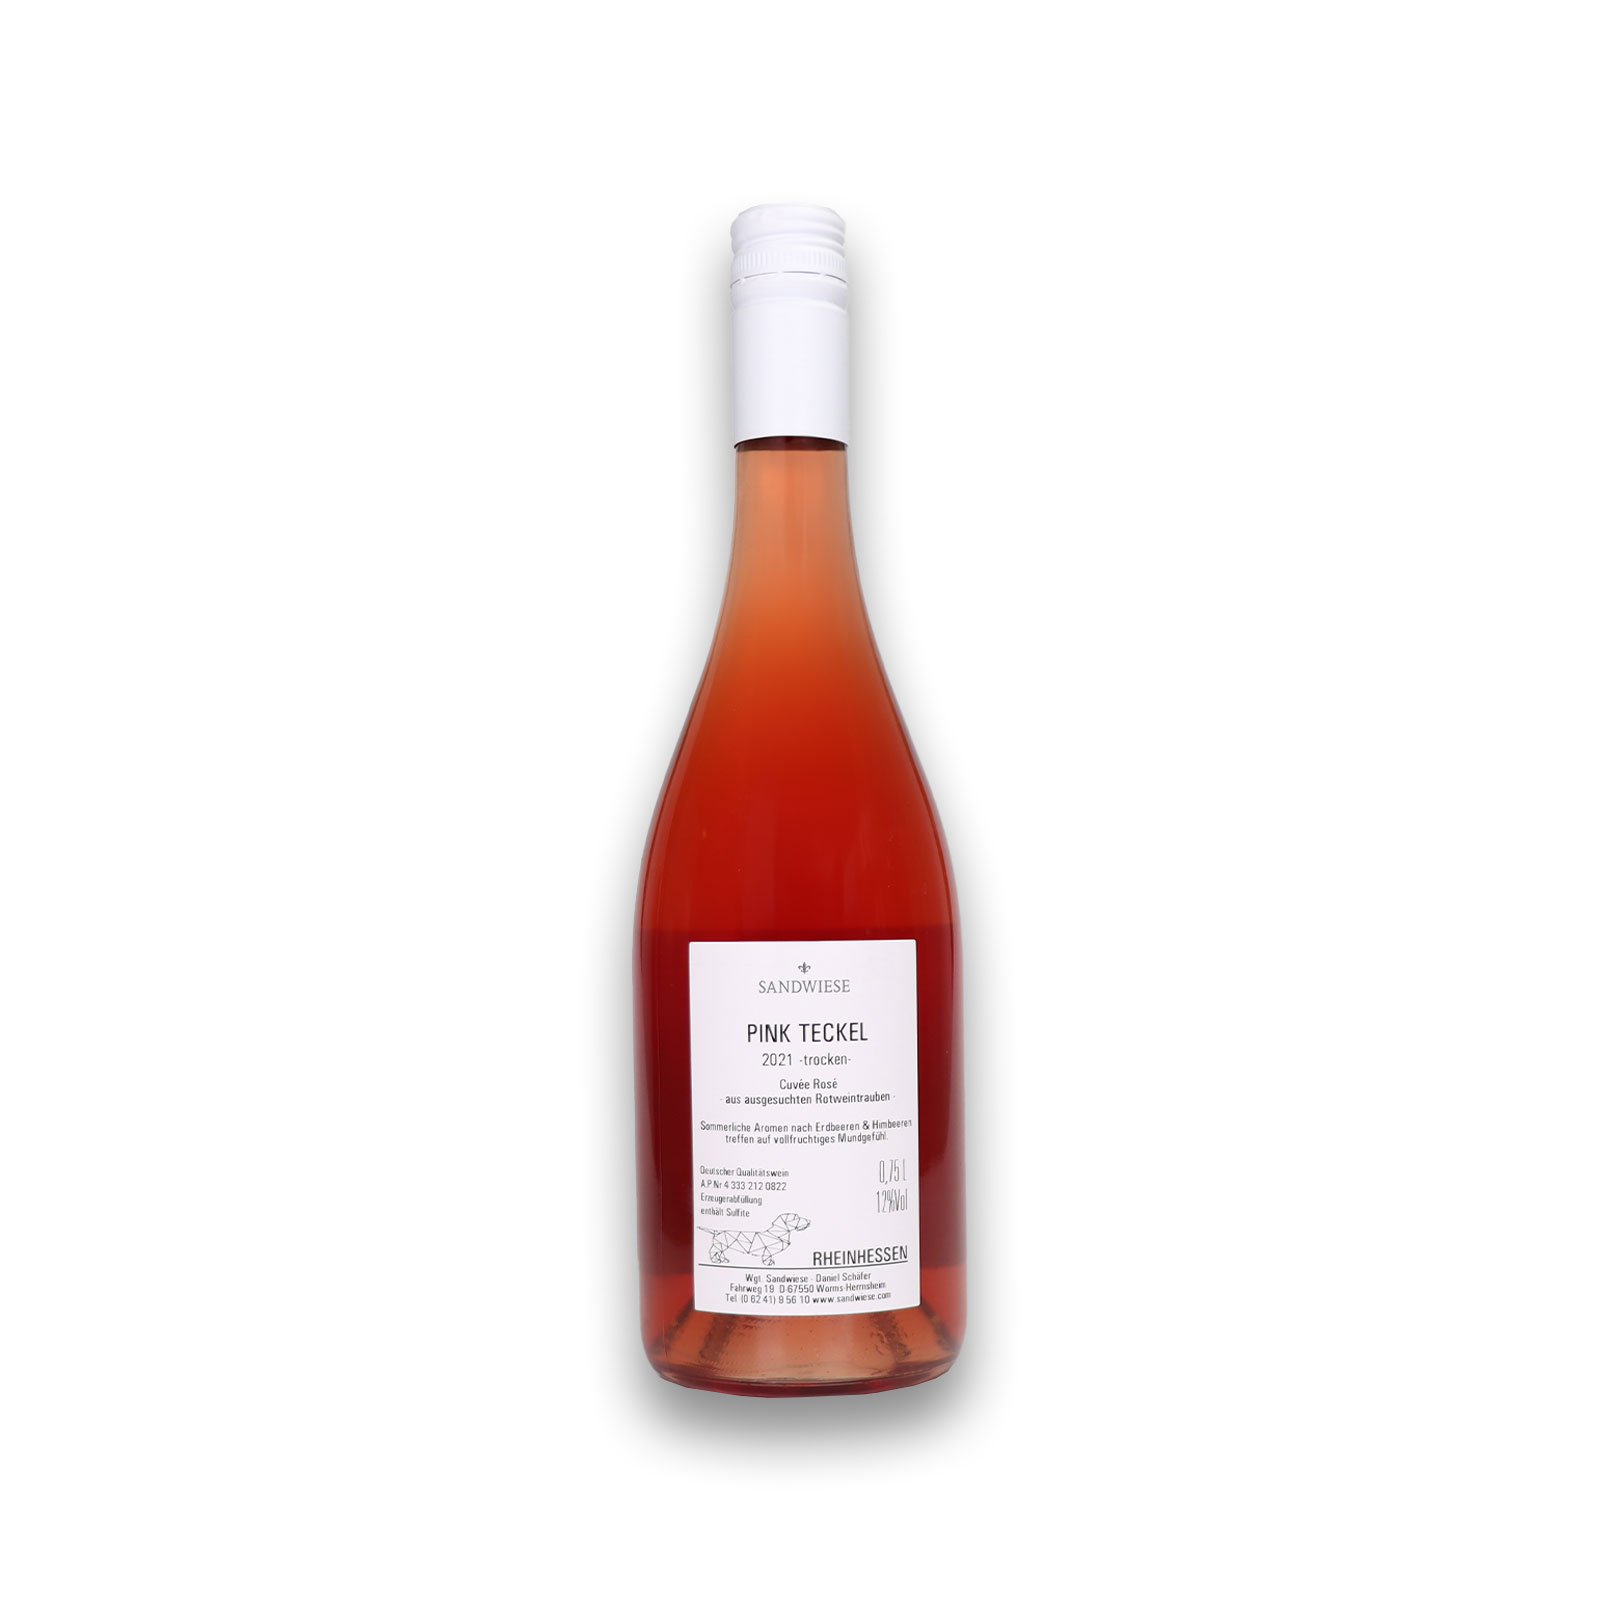 Rückseite mit Angaben zum PINK TECKEL Rosé Cuvée trocken  von dem Weingut Sandwiese.